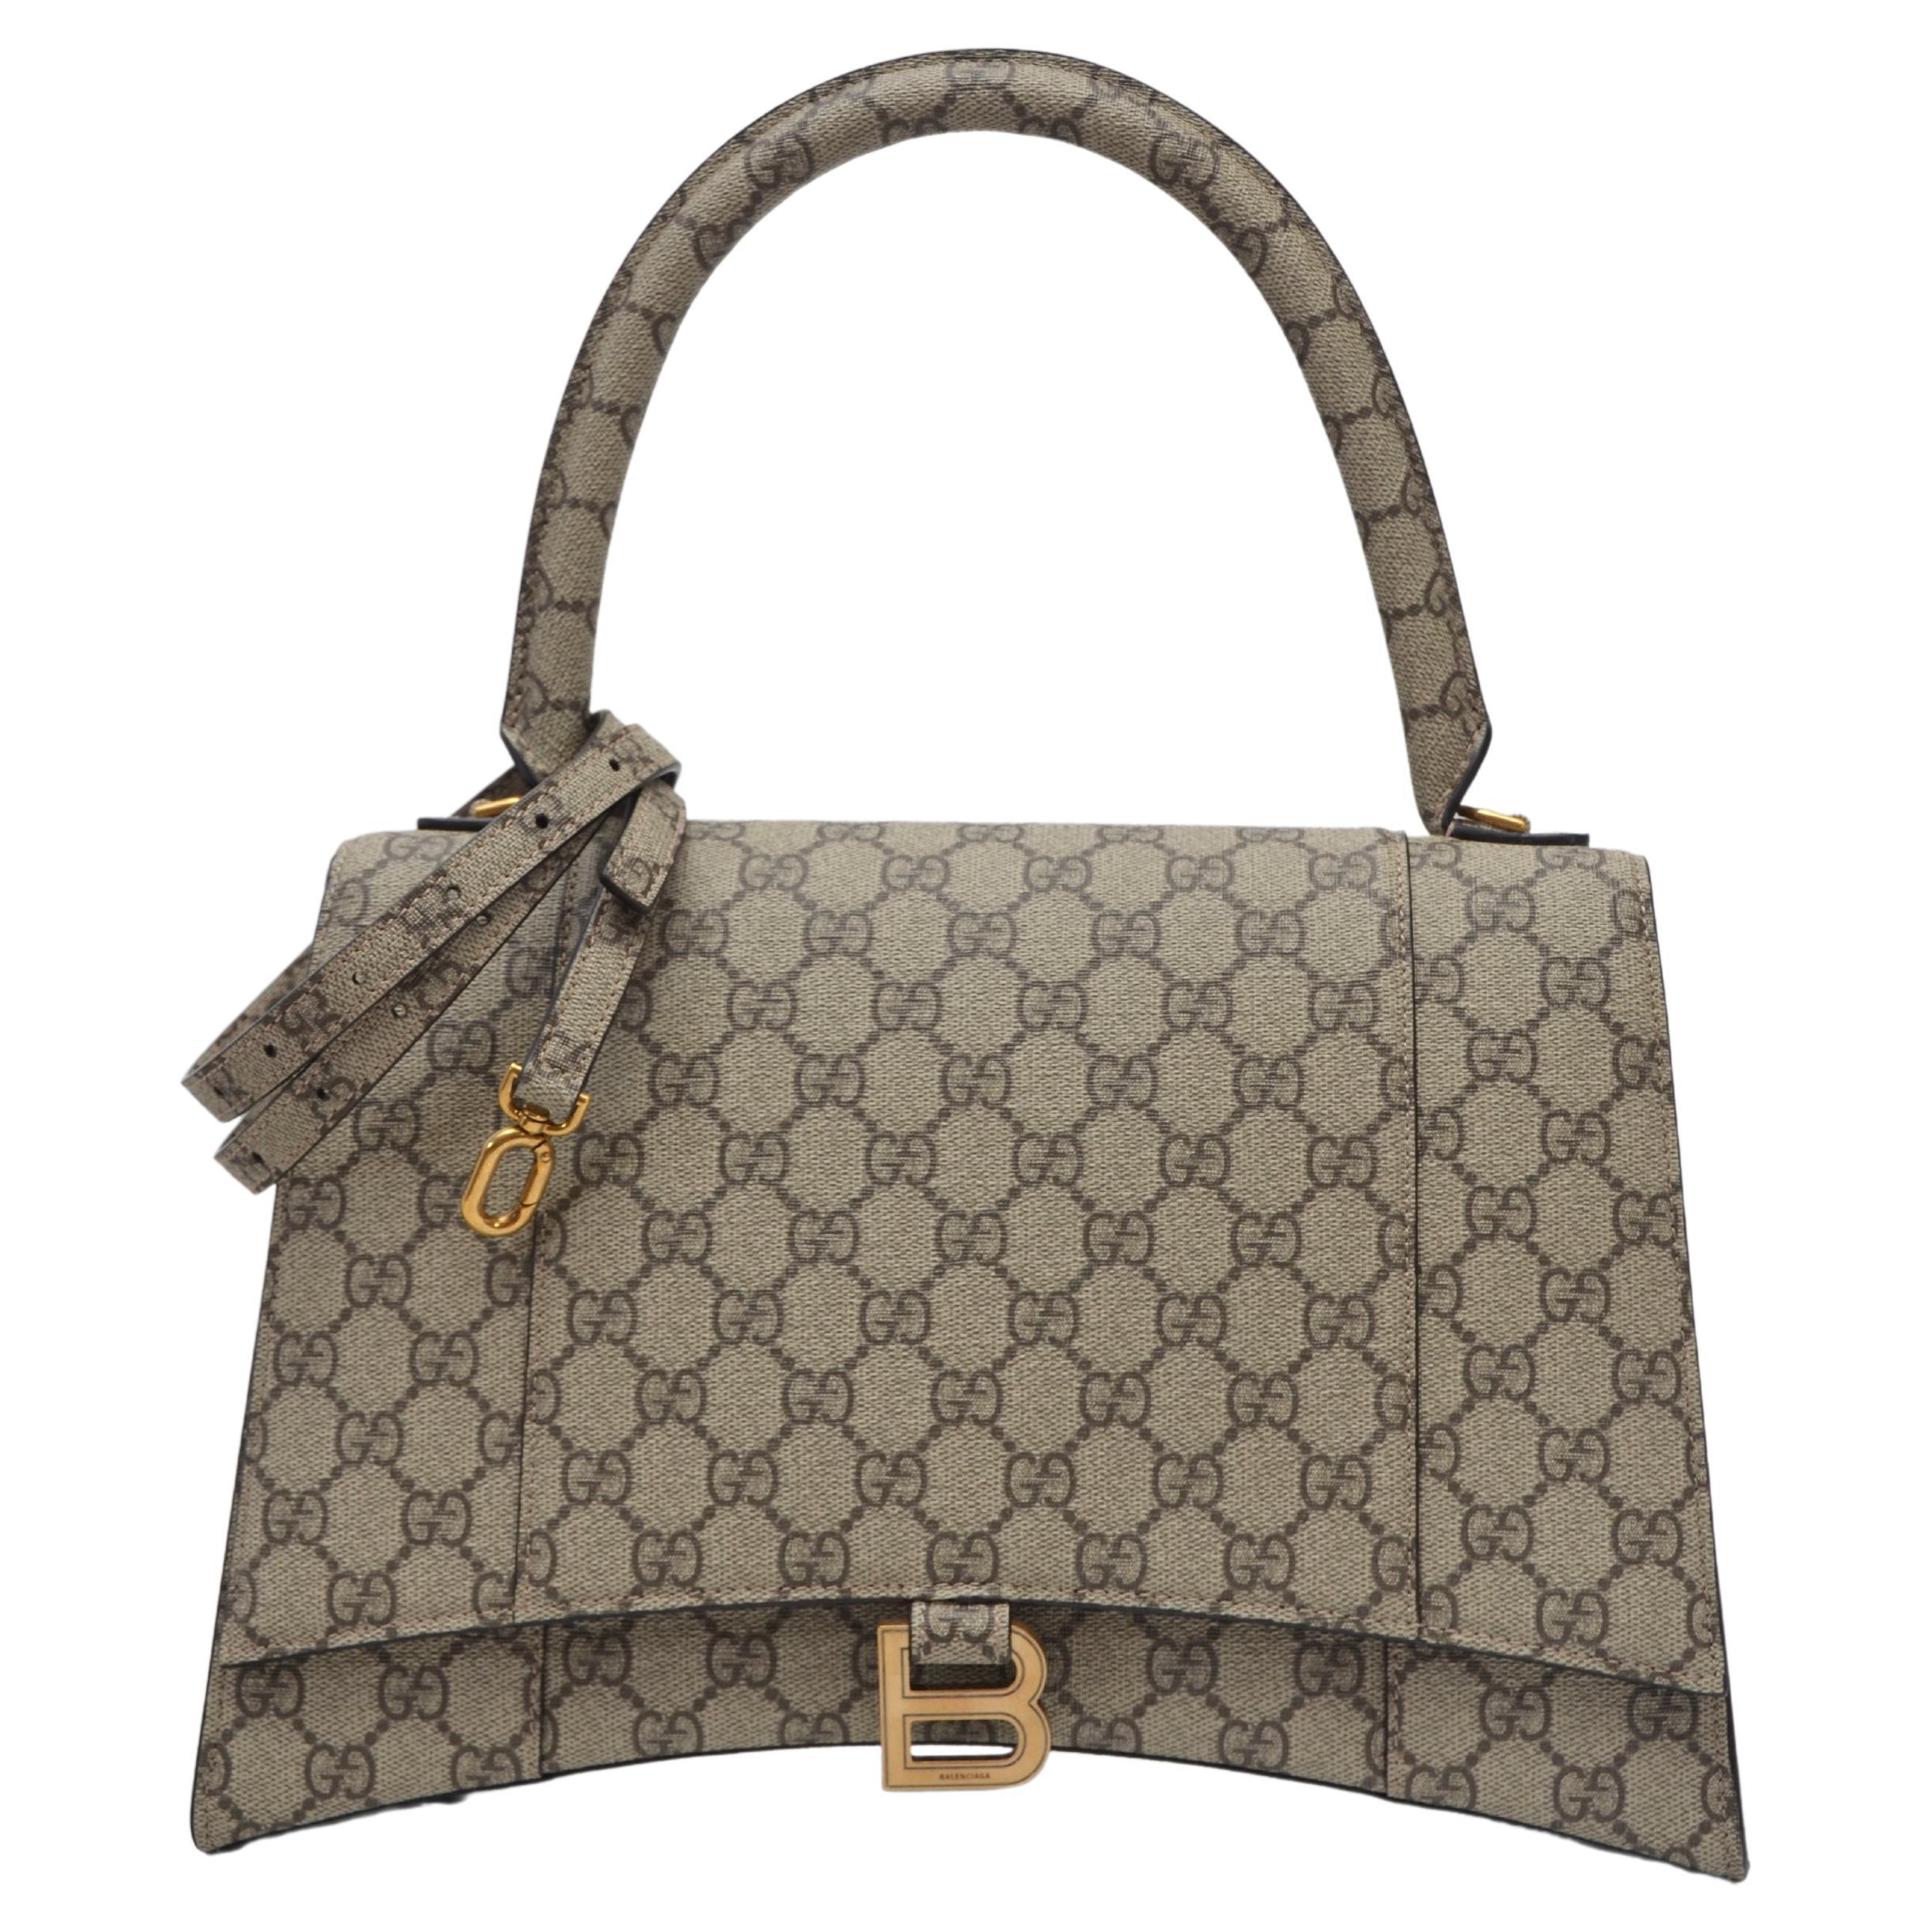 Gucci Balenciaga Bag - 10 For Sale on 1stDibs